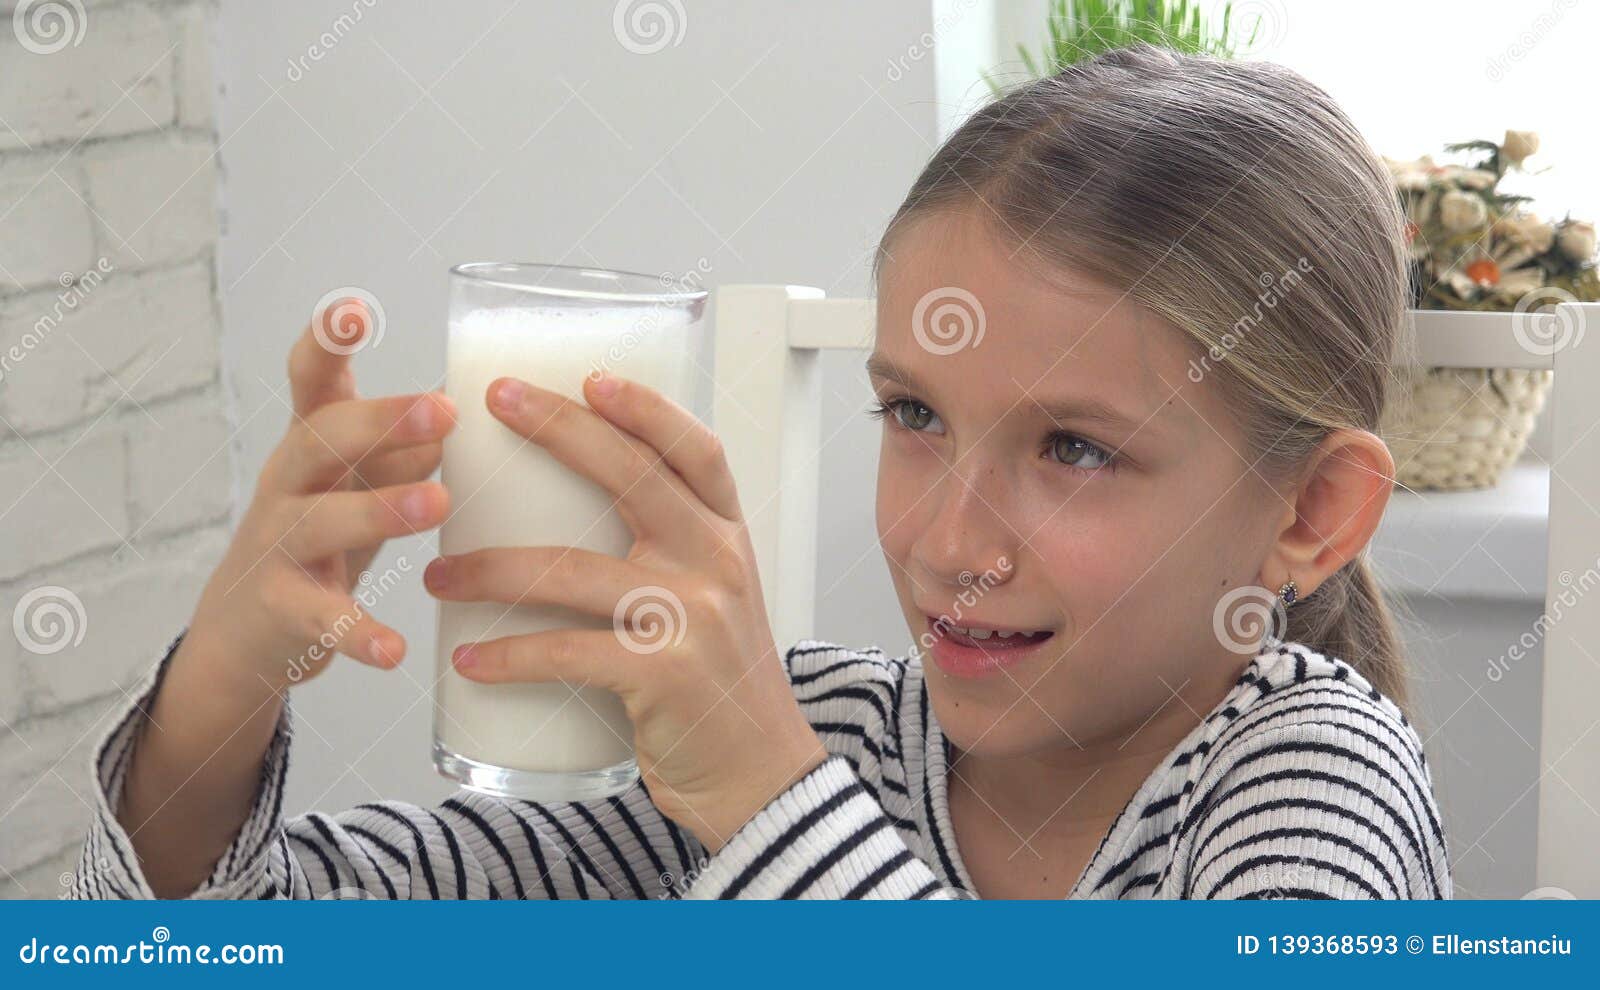 Child Drinking Milk at Breakfast in Kitchen, Girl Tasting Dairy ...